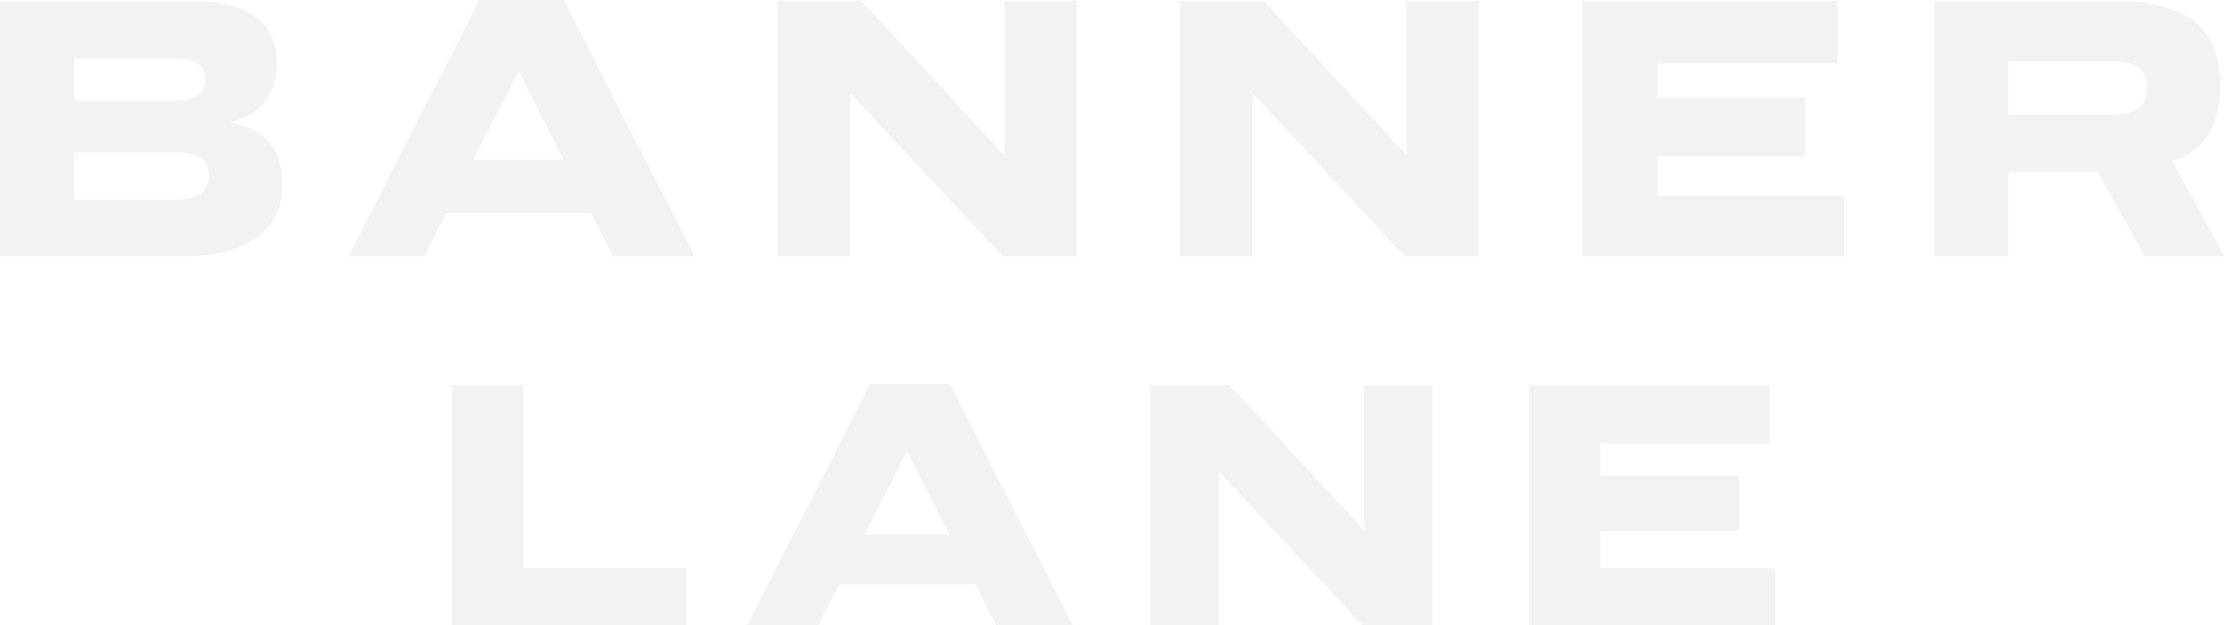 Banner Lane logo